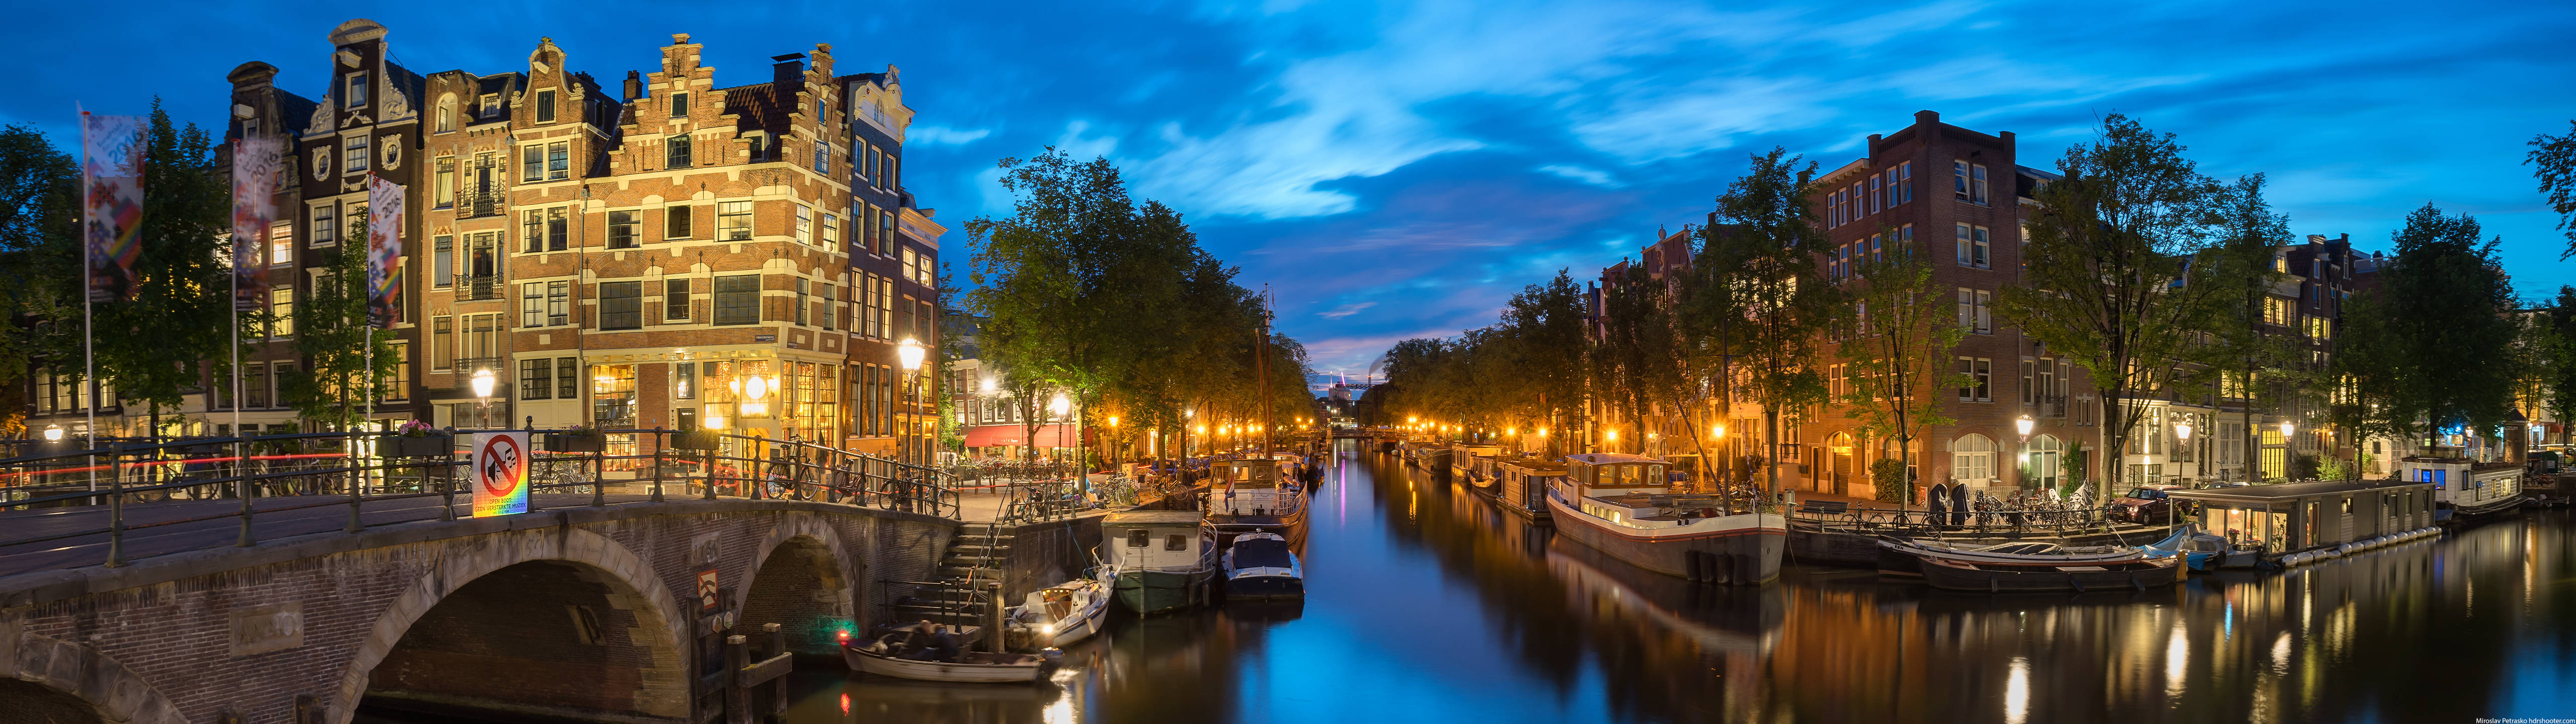 Canals Of Amsterdam 4k Ultra Widescreen Wallpaper